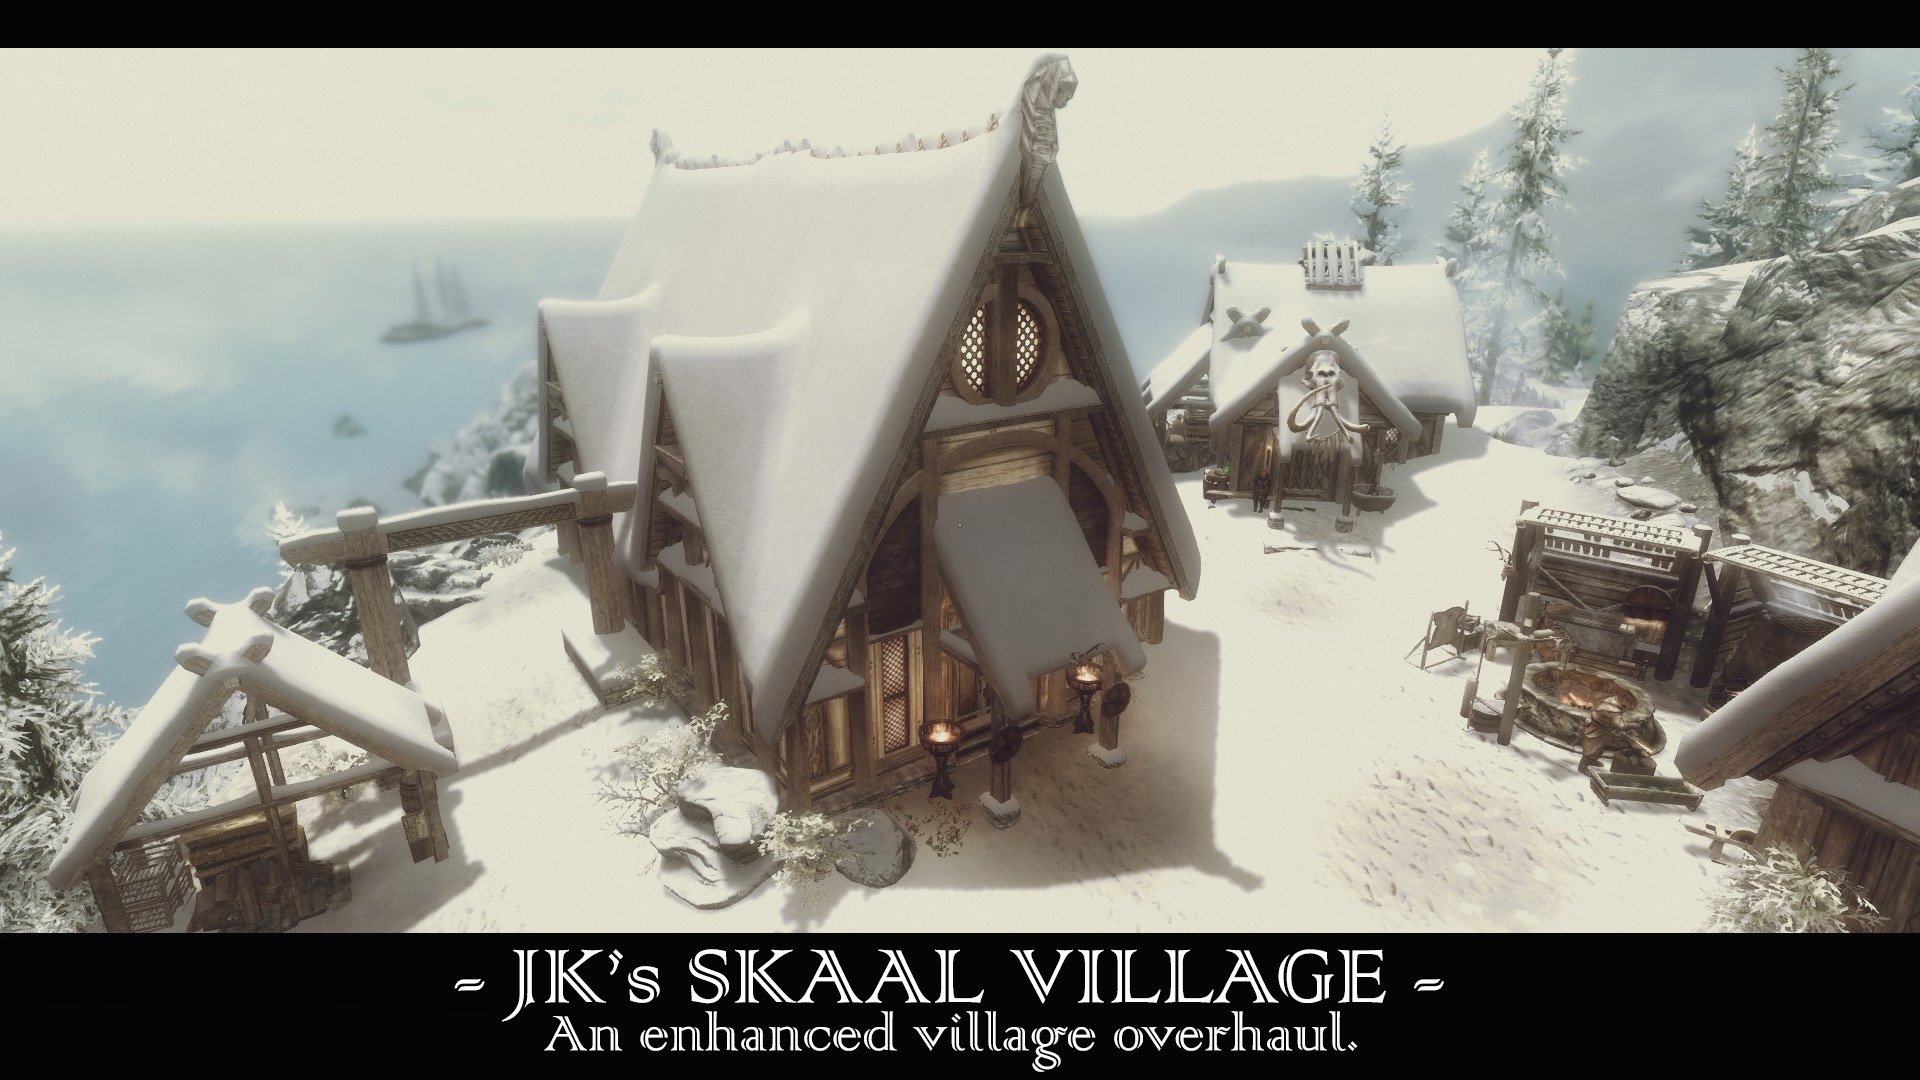 JKs Skaal village миниатюра 1. Нажмите, чтобы перейти к ссылке для скачиван...